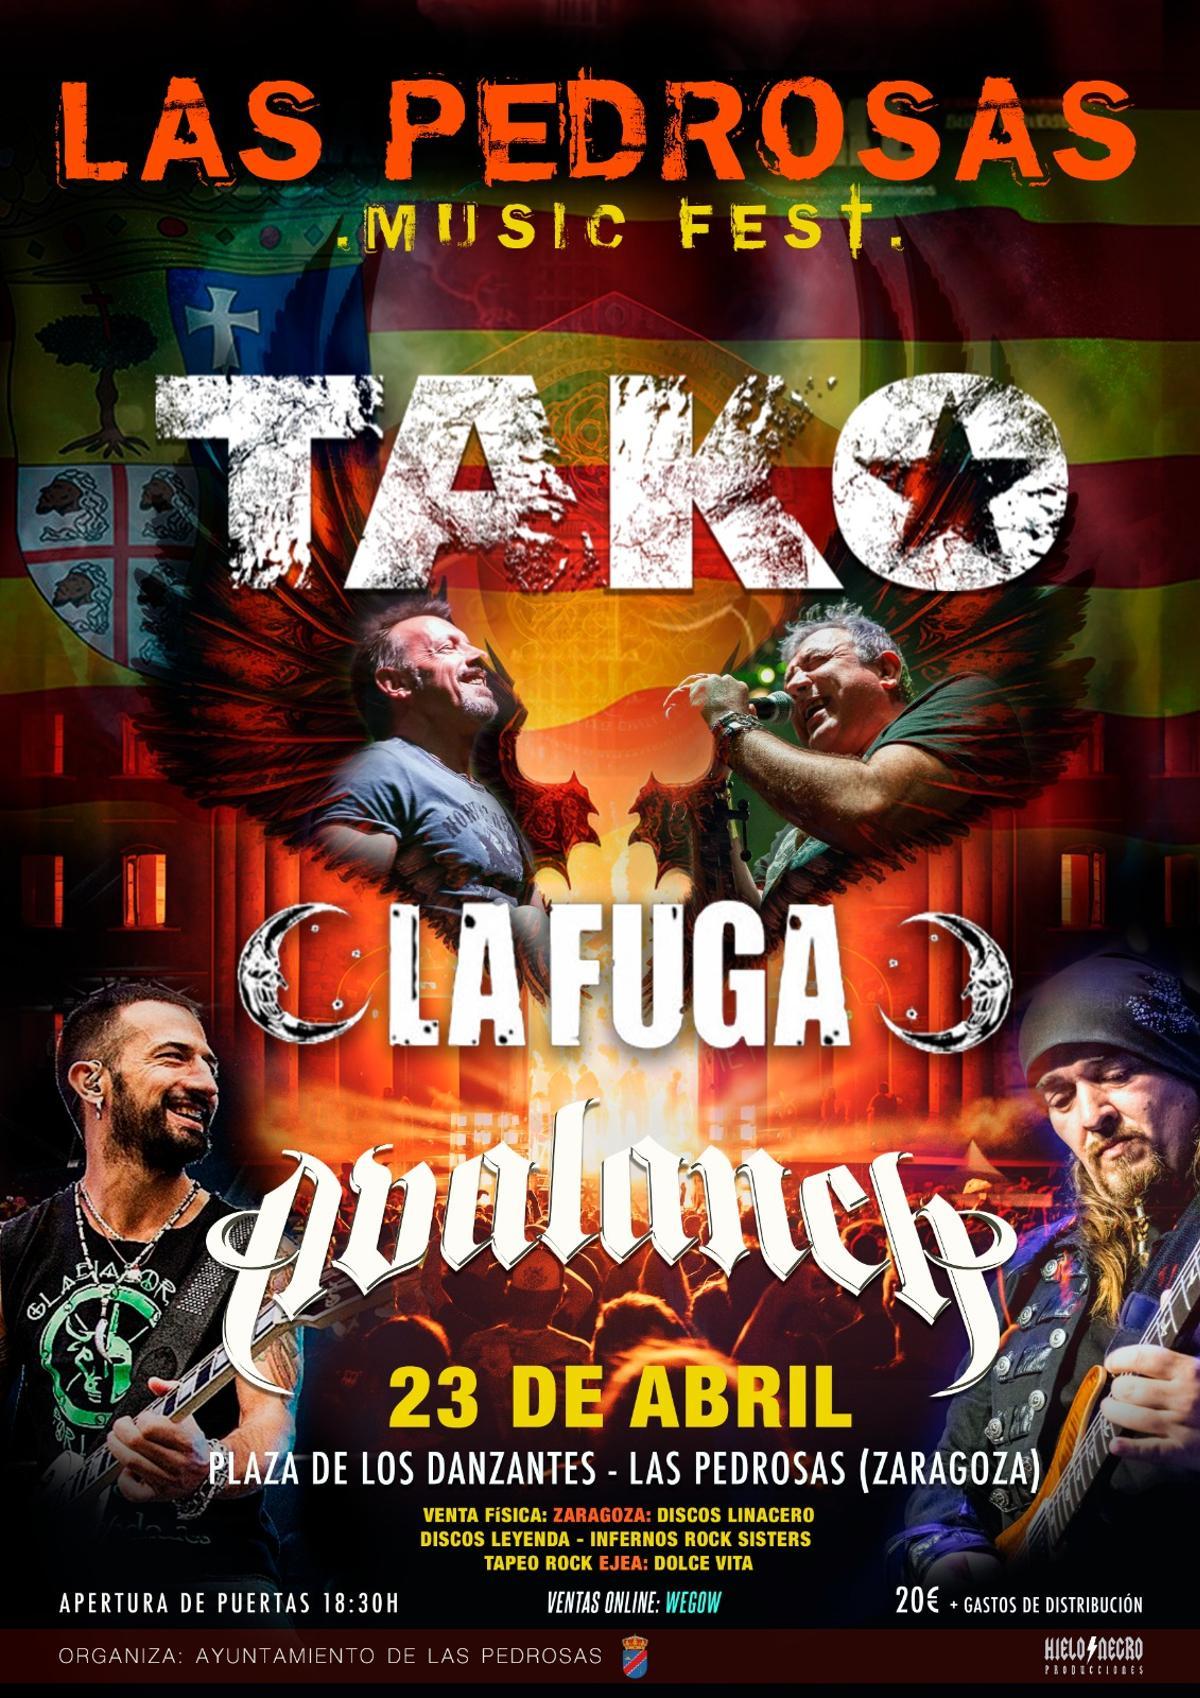 El grupo ejeano Tako actuará en el Las Pedrosas Music Fest